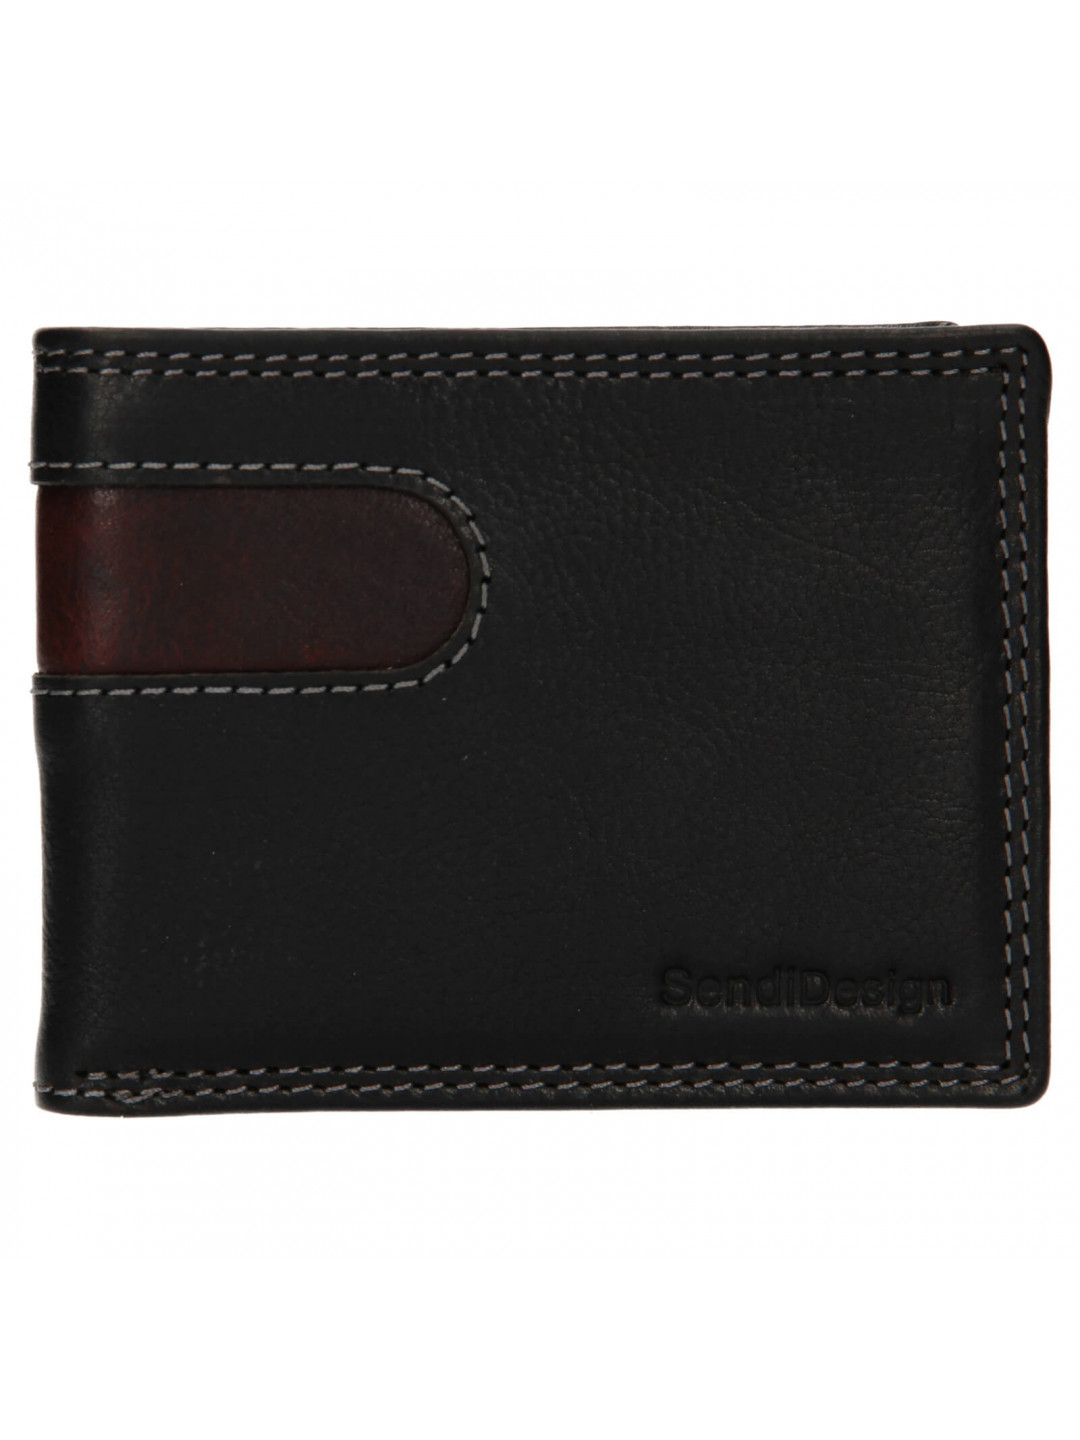 Pánská kožená peněženka SendiDesign Pent – černo-hnědá